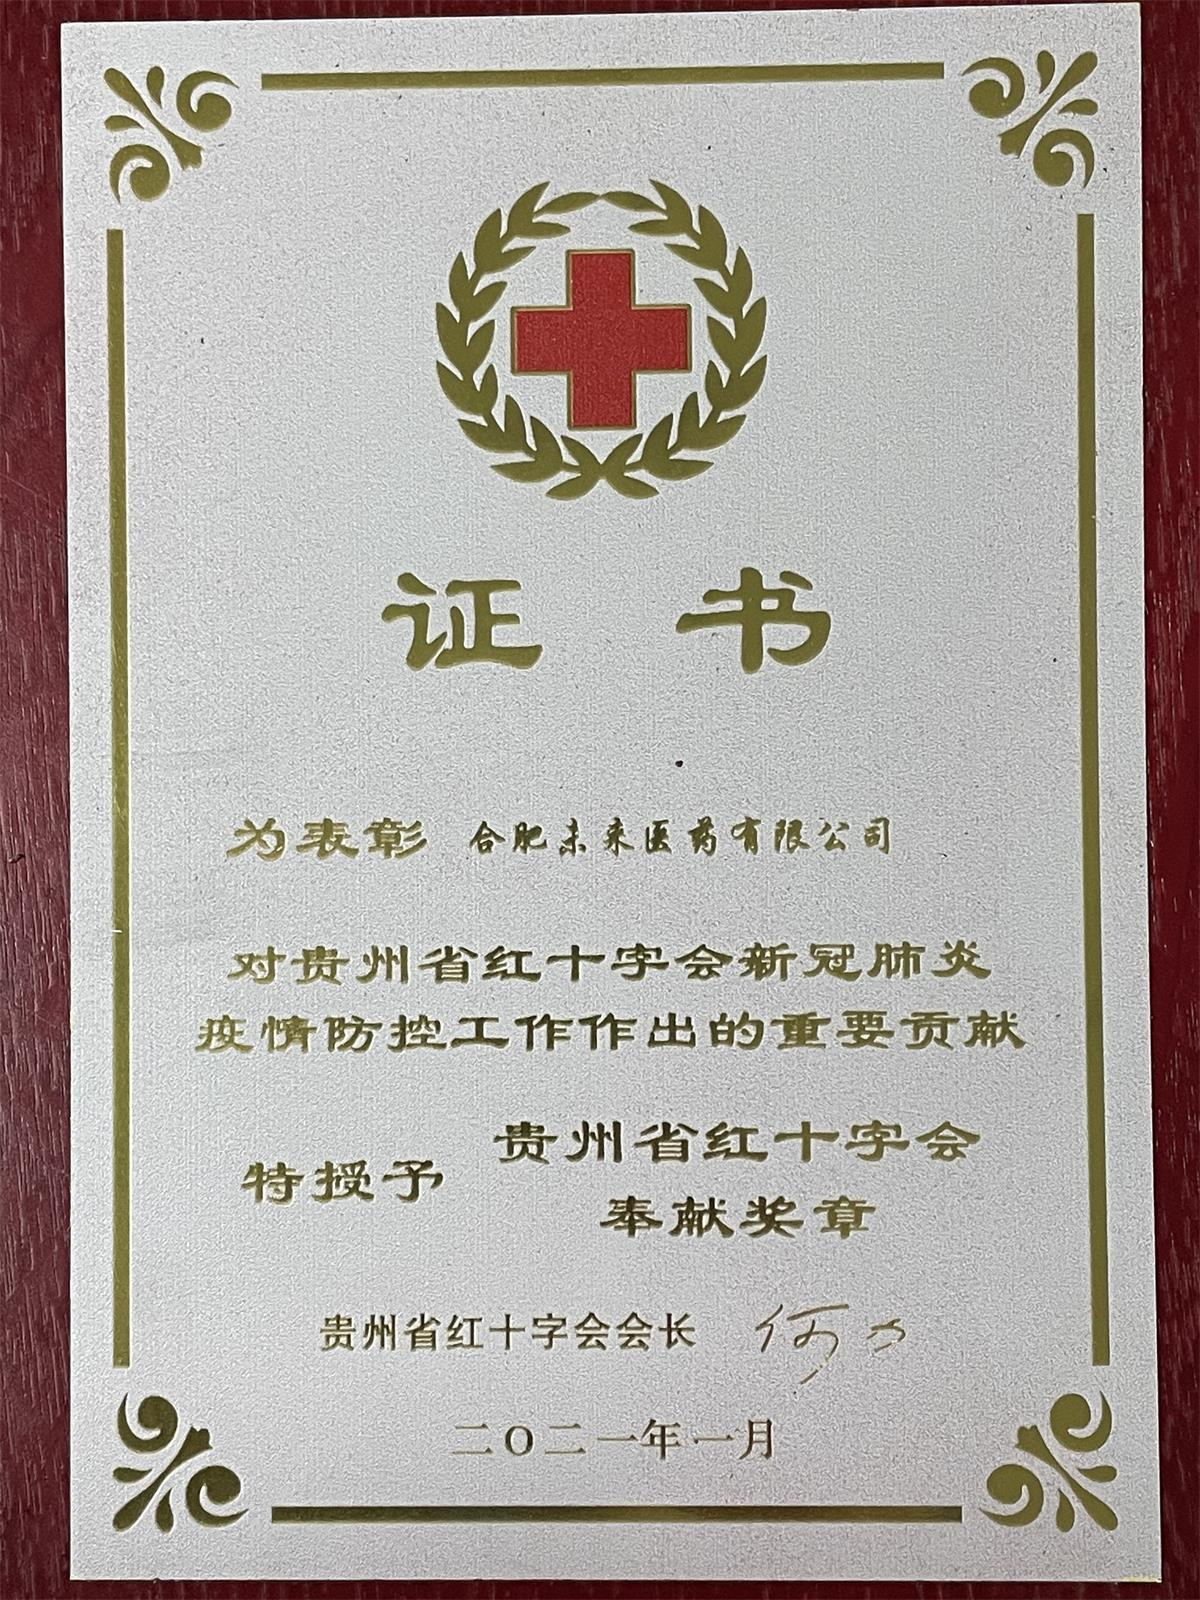 貴州省紅十字會奉獻獎章